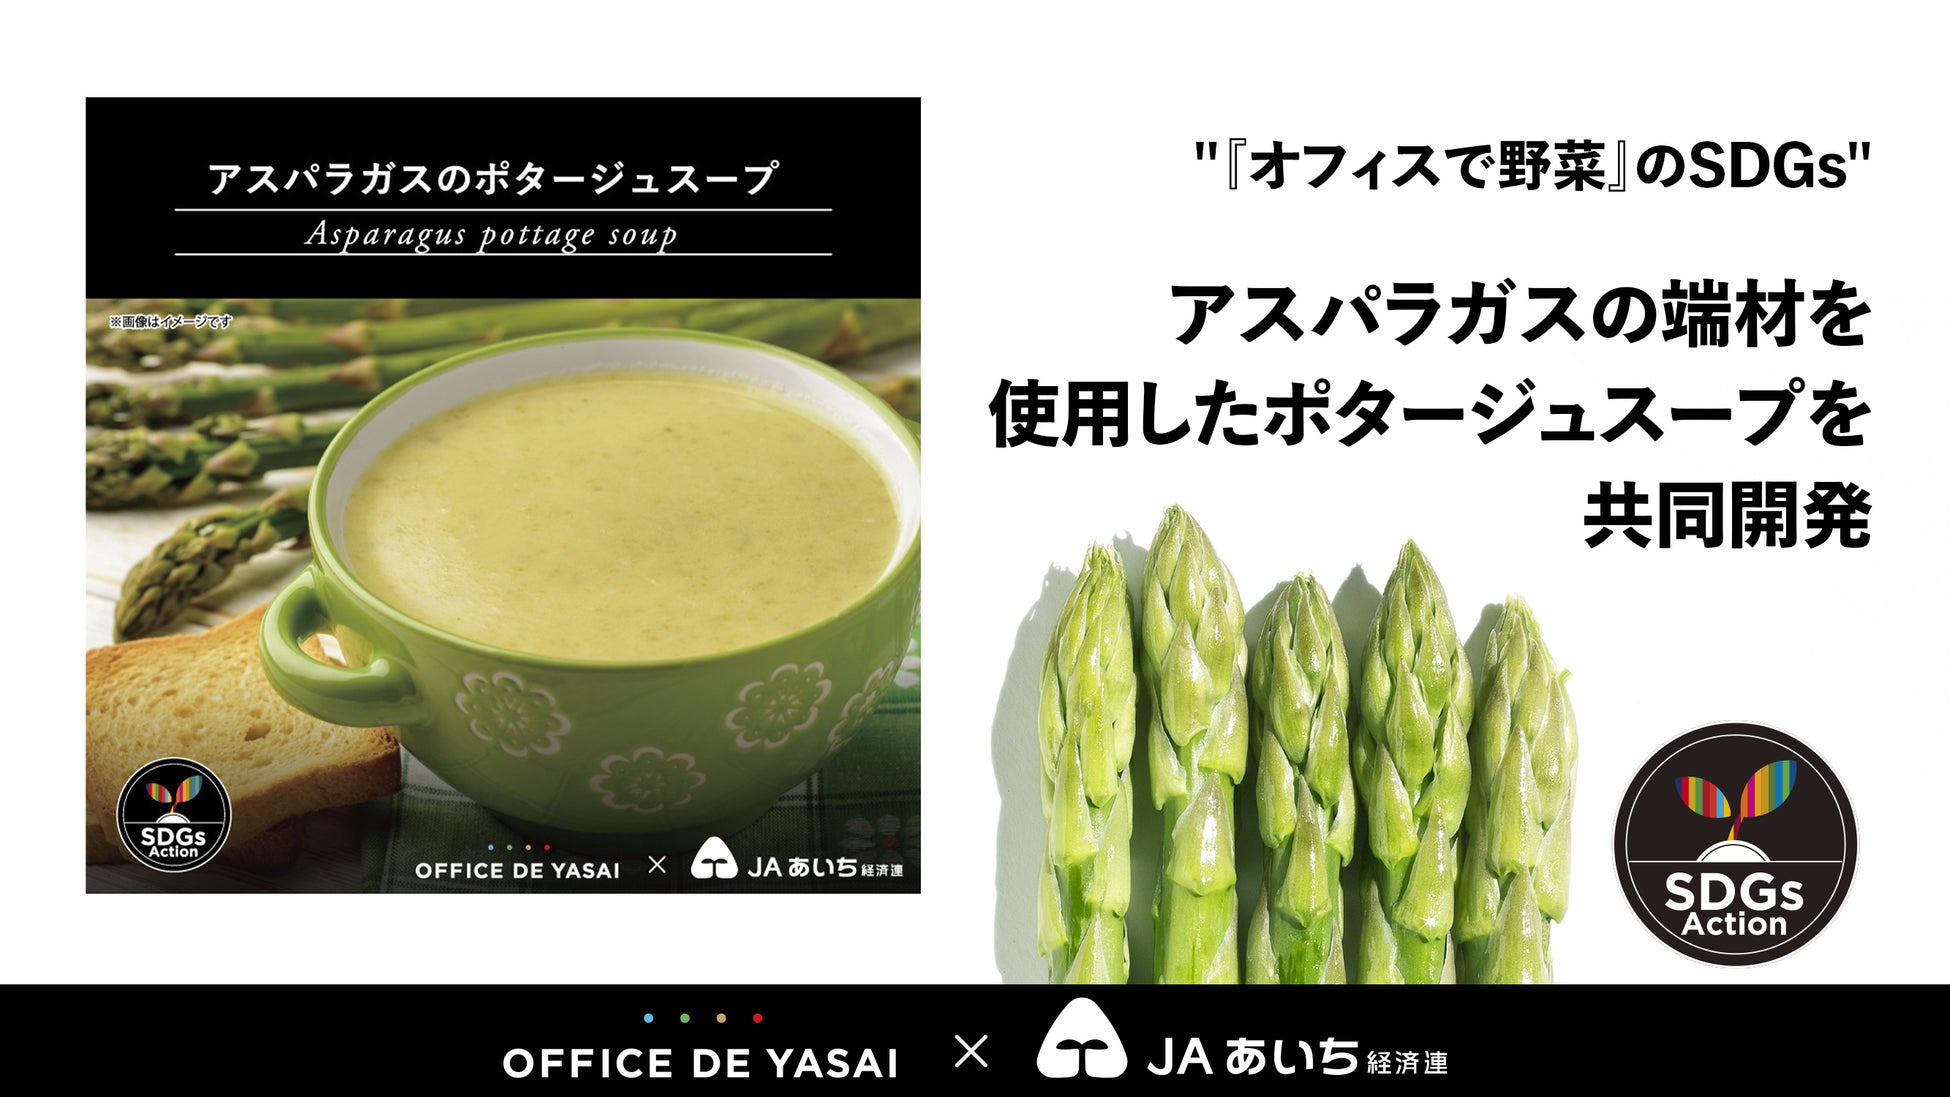 【“オフィスで野菜“のSDGs企画】フードロス削減を目指し、愛知県産アスパラガスの端材を使用したポタージュスープをJAあいち経済連と共同開発のサブ画像1